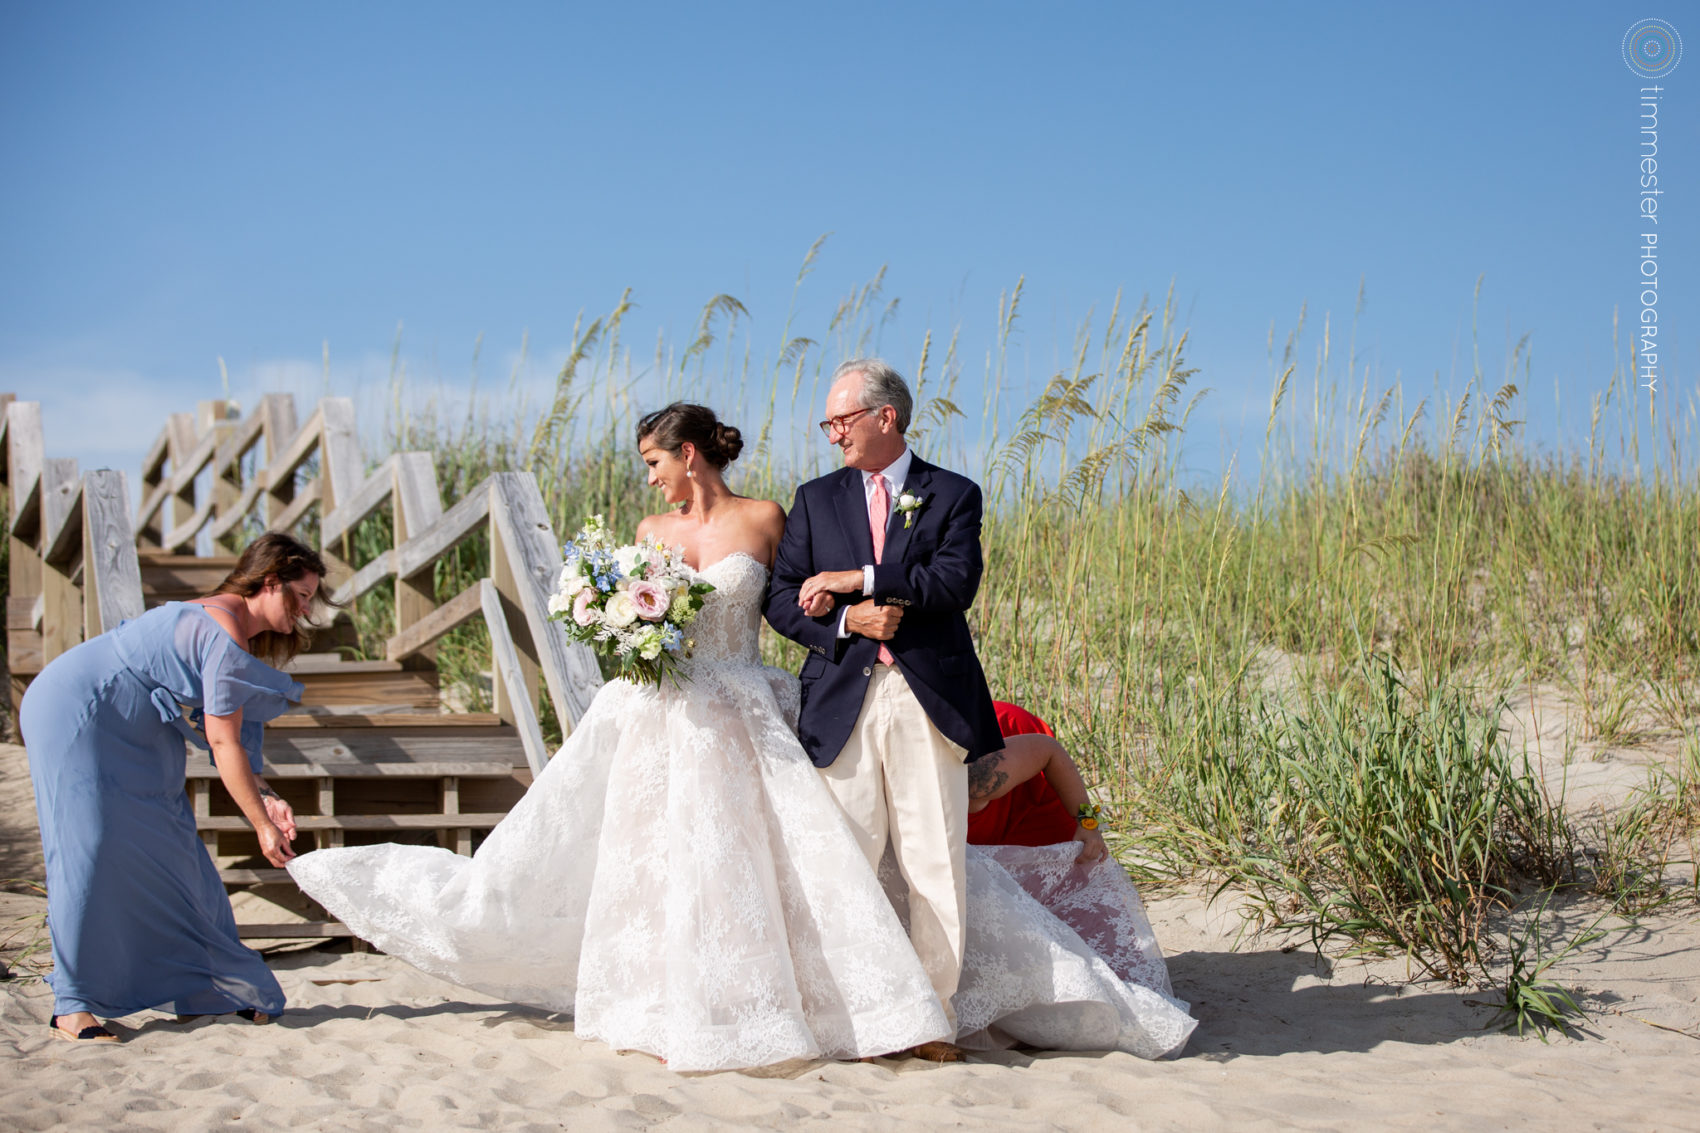 Beach wedding at Bald Head Island in North Carolina